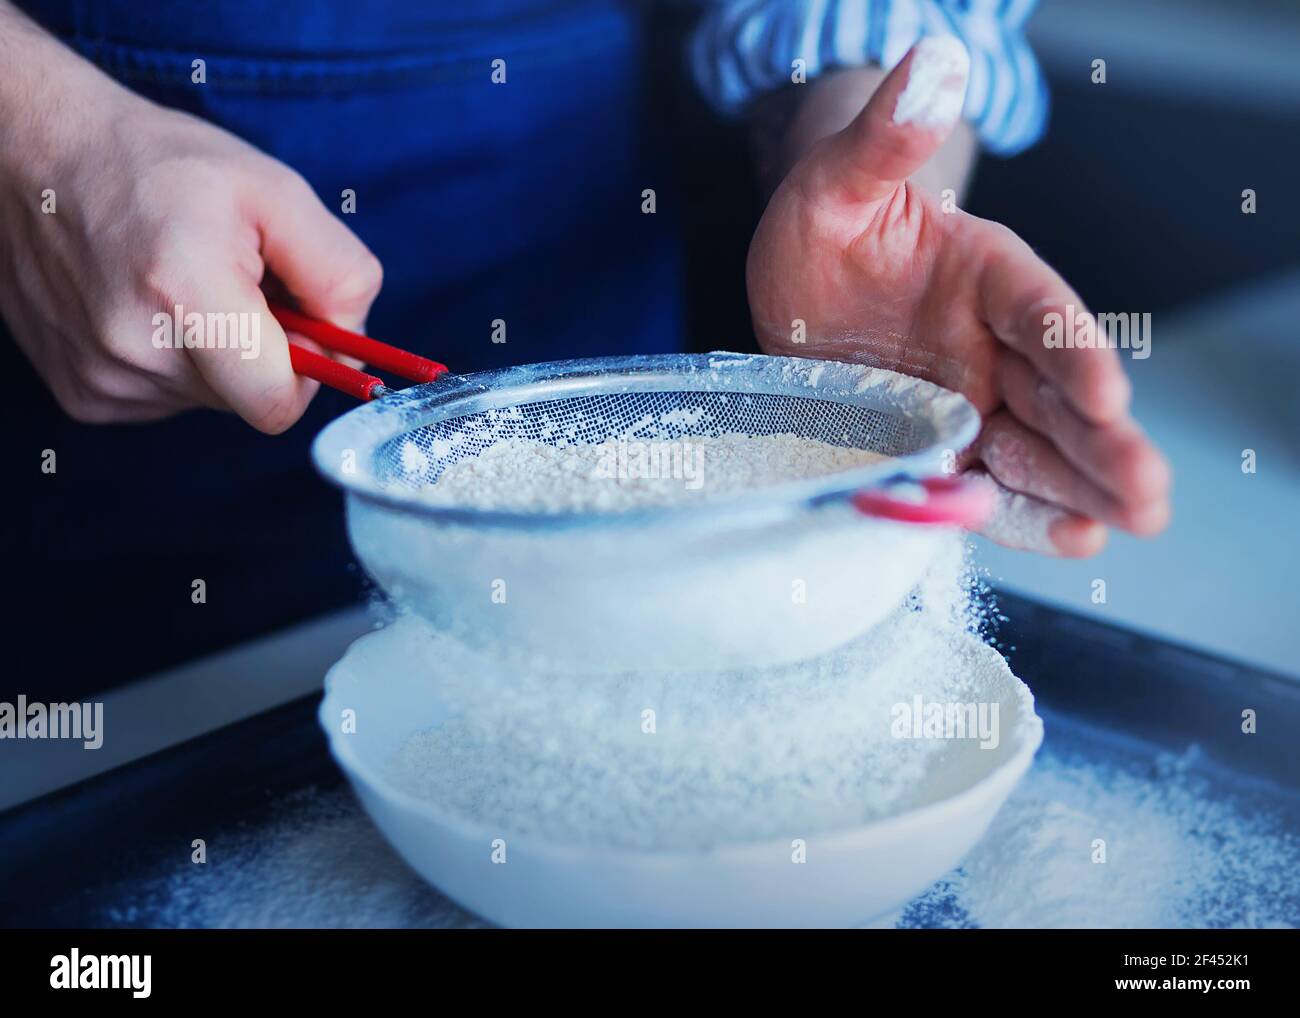 Ein Mann in einer blauen Schürze siebt Mehl durch ein Sieb in eine weiße Schüssel, in der er die Zutaten für den Teig mit dem Mehl mischen wird. Home Co Stockfoto